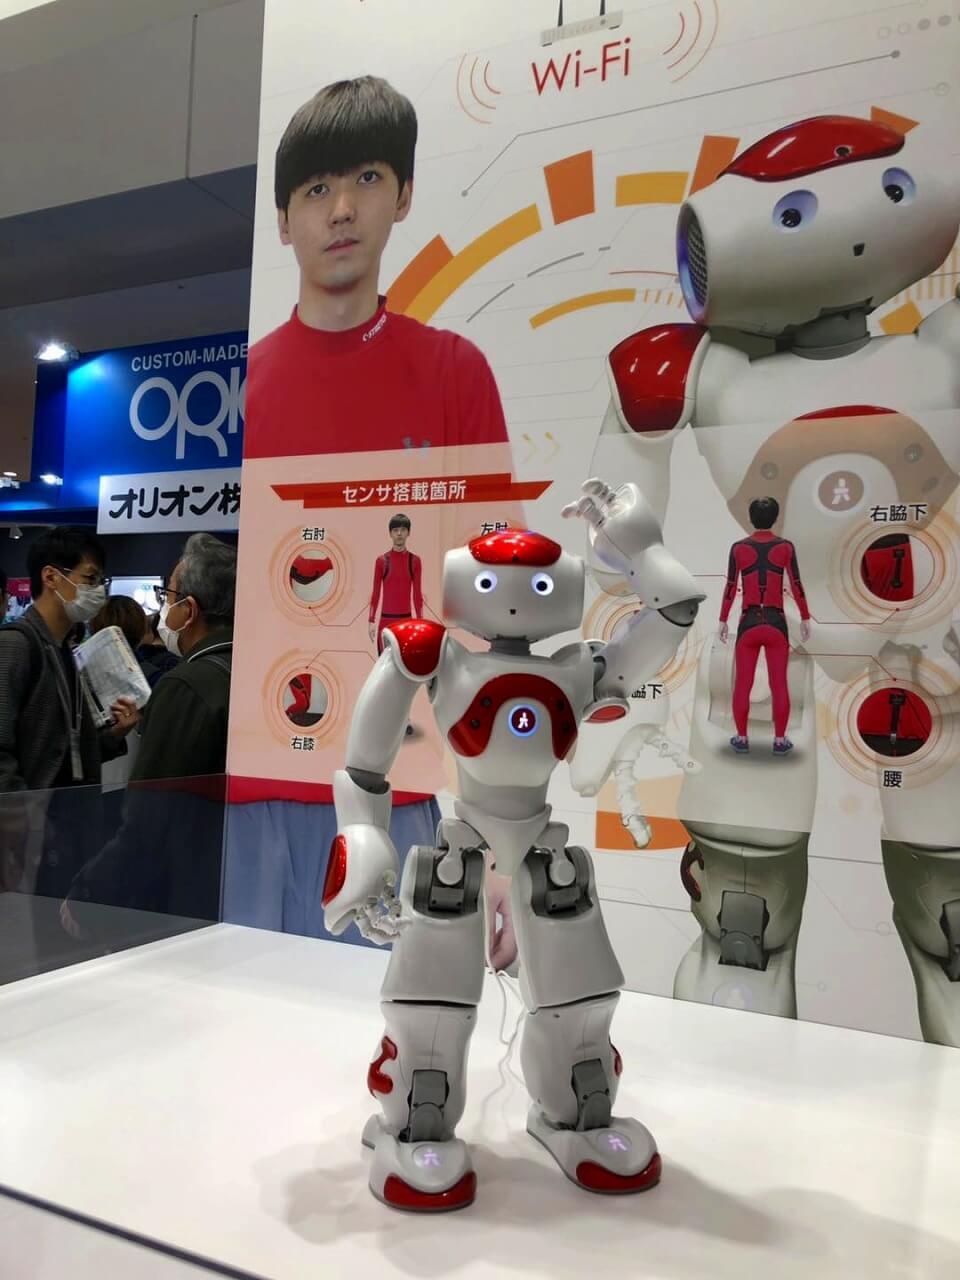 新型机器人解决方案引领东京RoboDEX展 基于无线传送技术的人机协作操控机器人